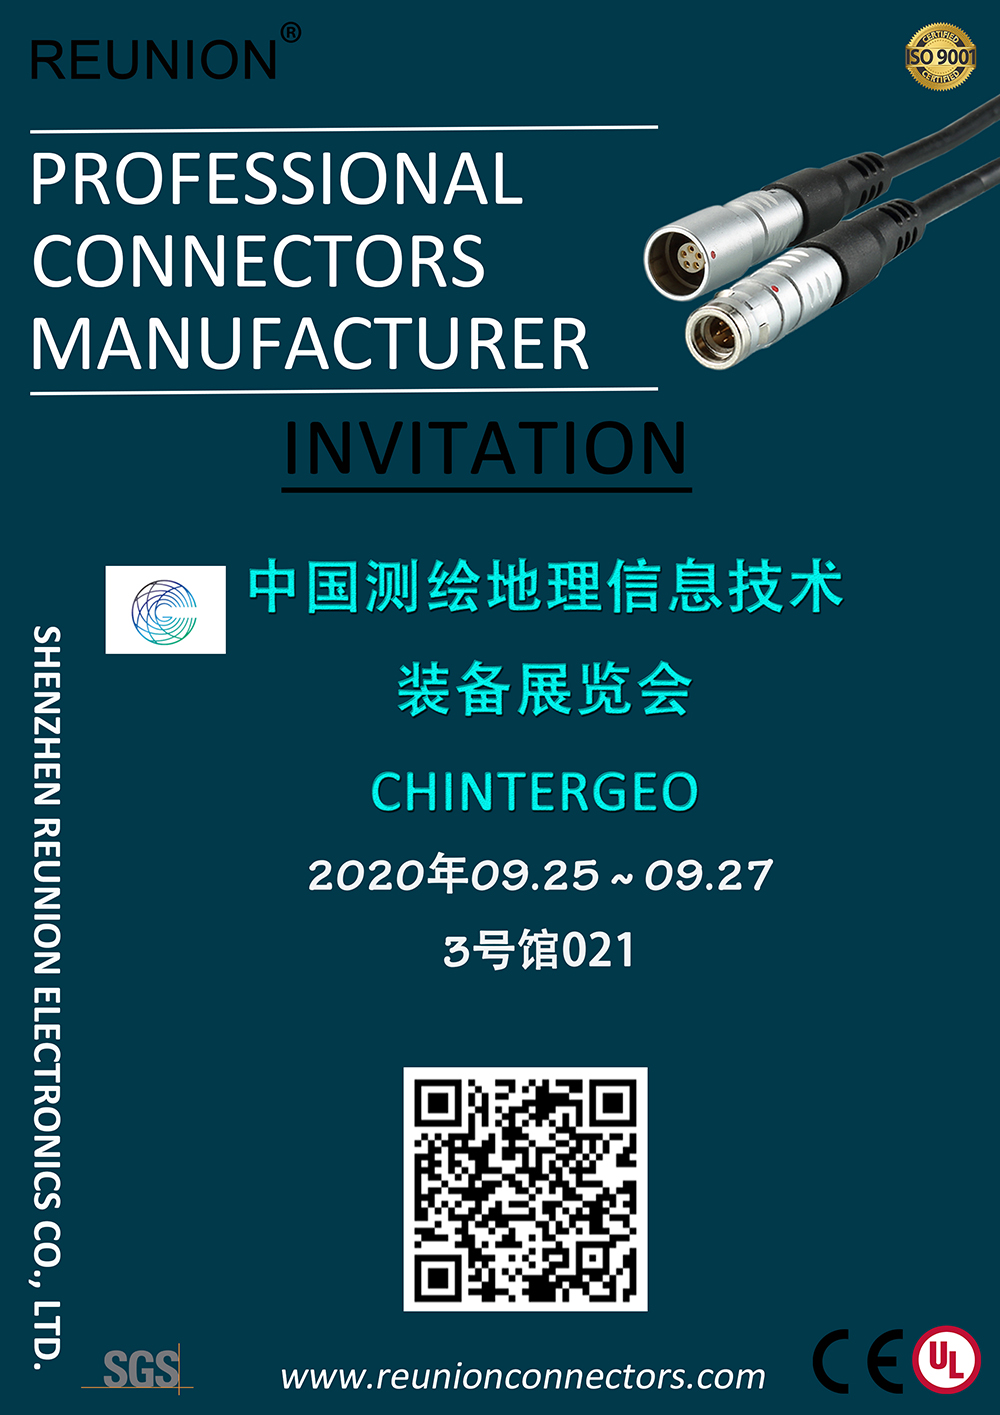 2020中国测绘地理信息技术装备展览会CHINTERGEO - REUNION Connectors